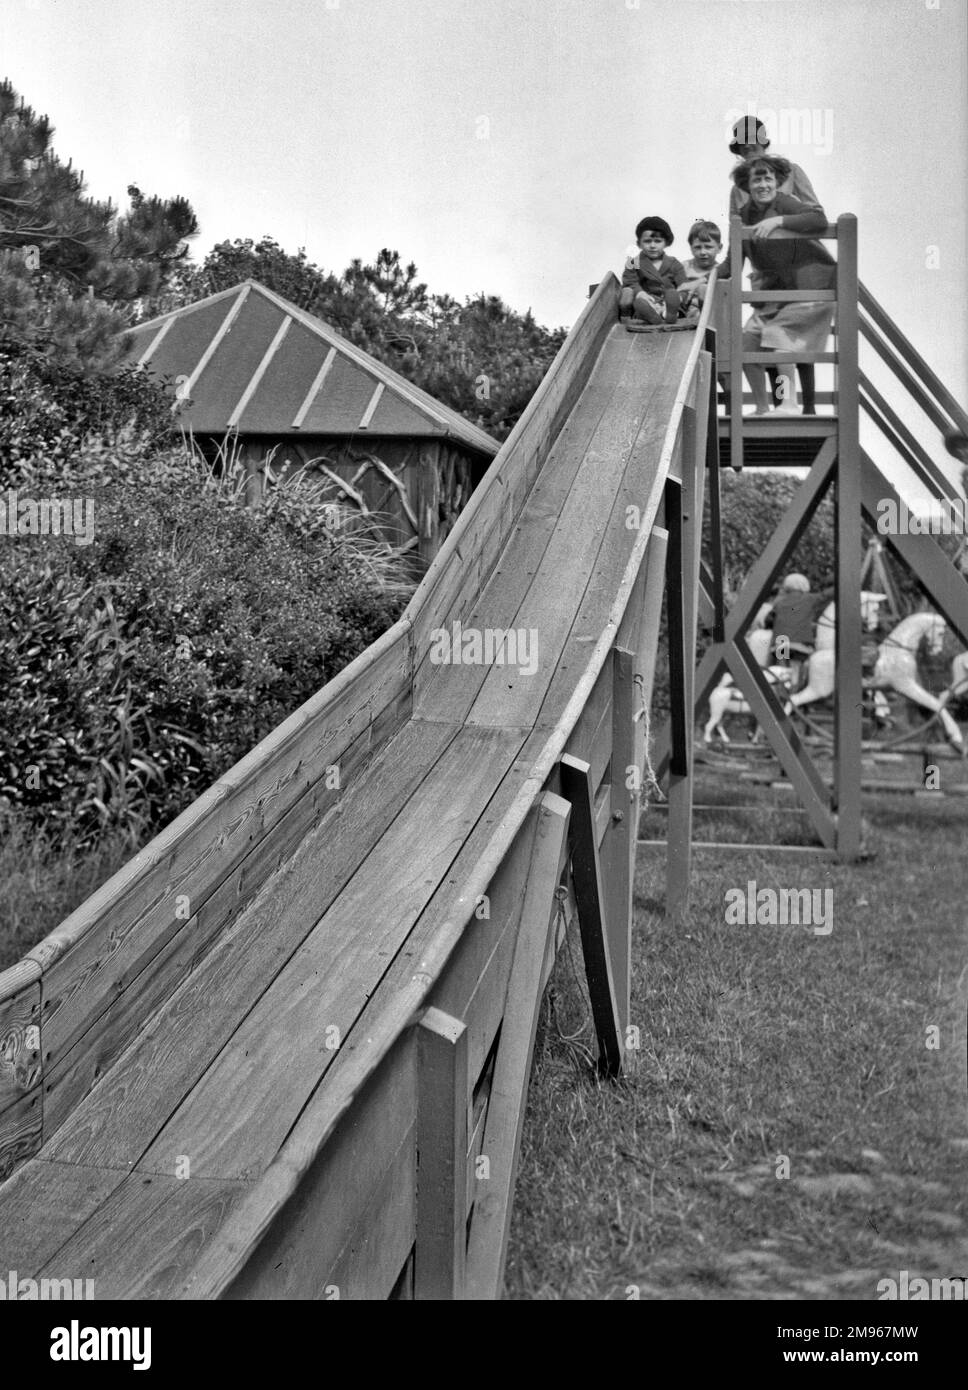 Deux enfants, une fille et un garçon, avec deux femmes au sommet d'une aire de jeux en bois à Bexhill, Sussex. Des chevaux au rond-point peuvent être vus en arrière-plan. Banque D'Images